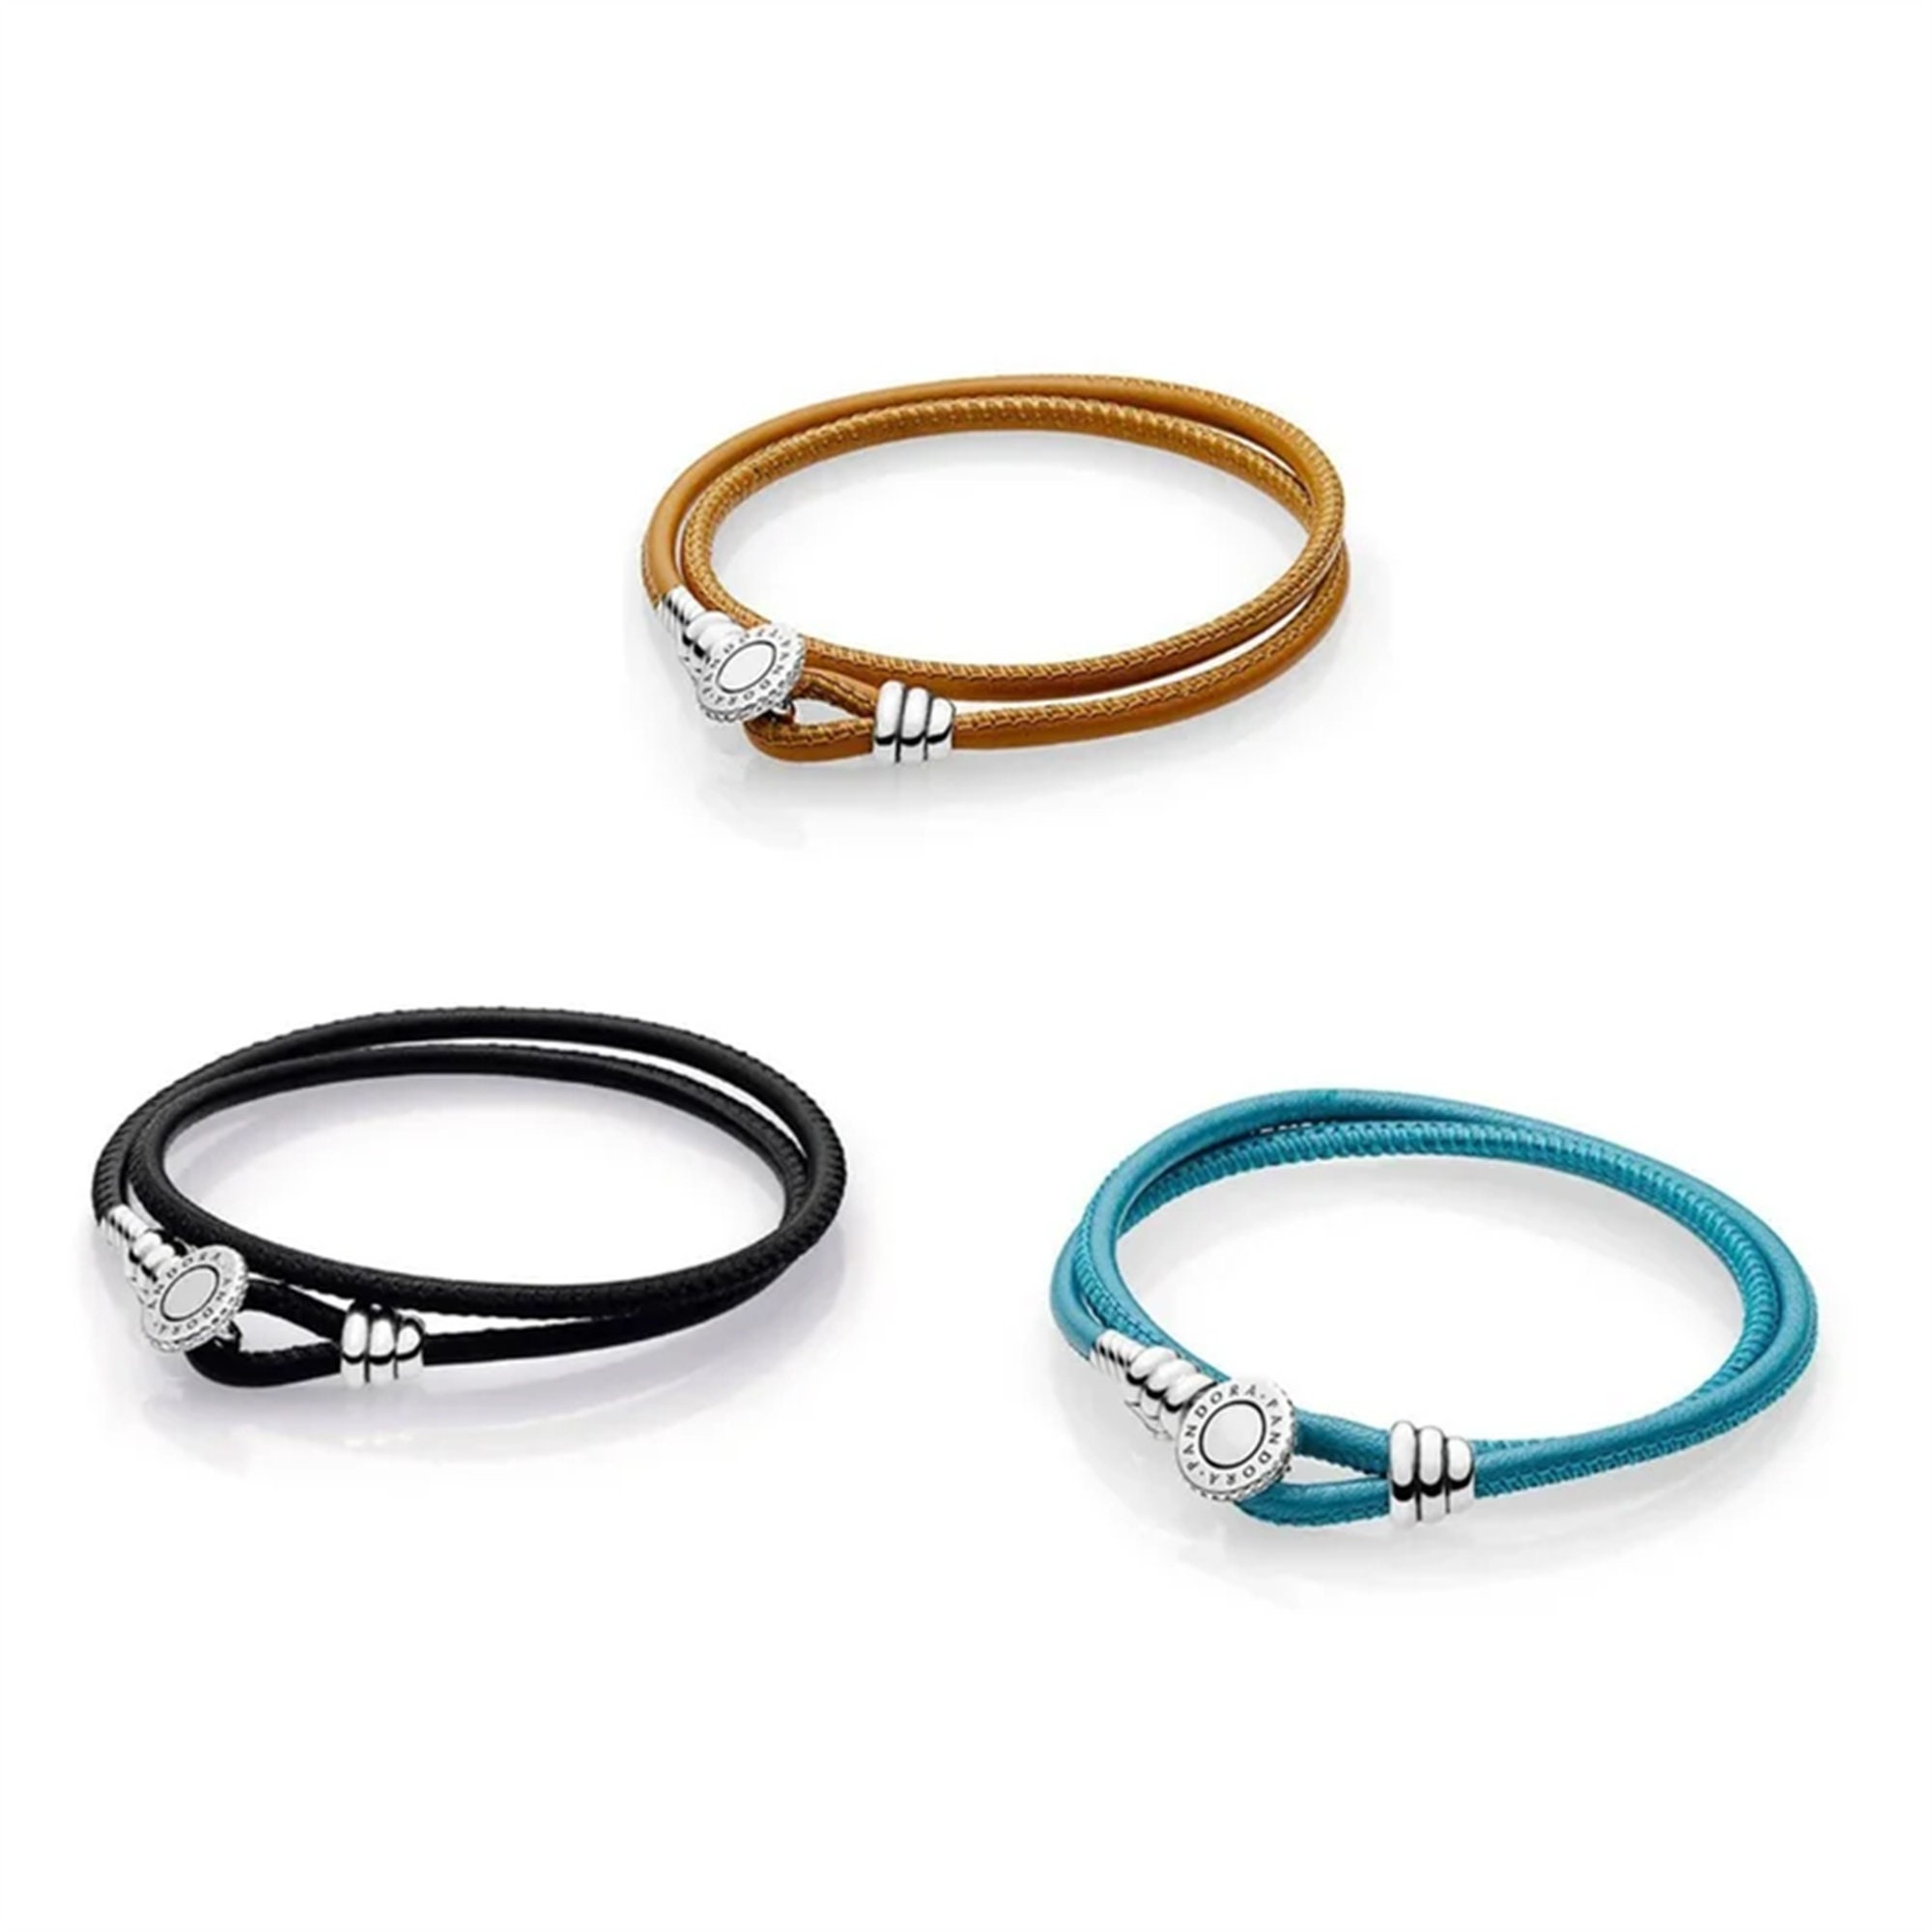 Pandora leather braided double bracelet w/charms!! | eBay